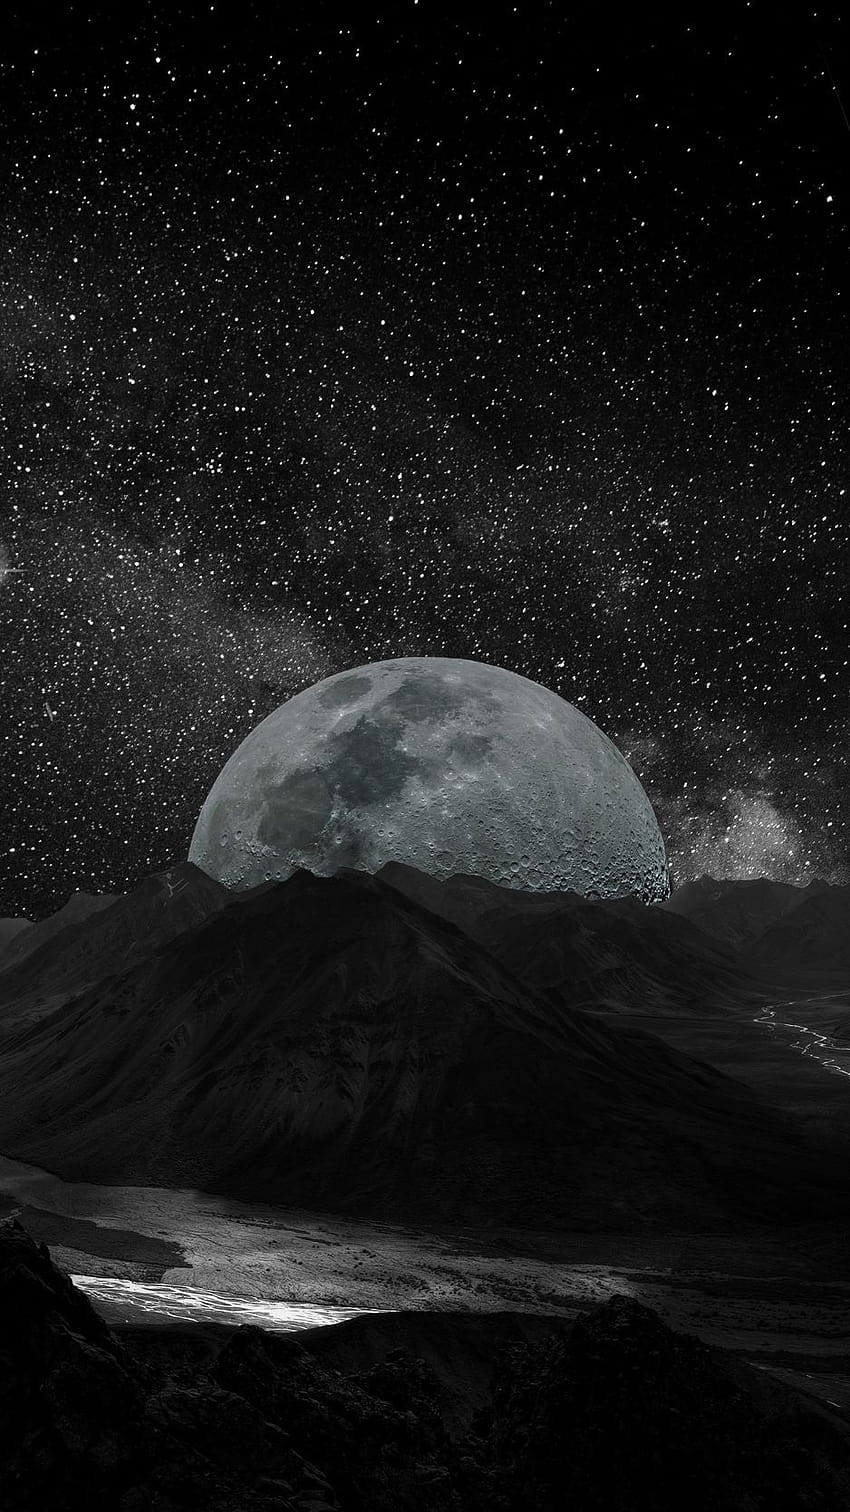 Księżyc, planeta, gwiazdy, galaktyka, przestrzeń, tła – Fajna estetyka księżycowej planety Tapeta na telefon HD